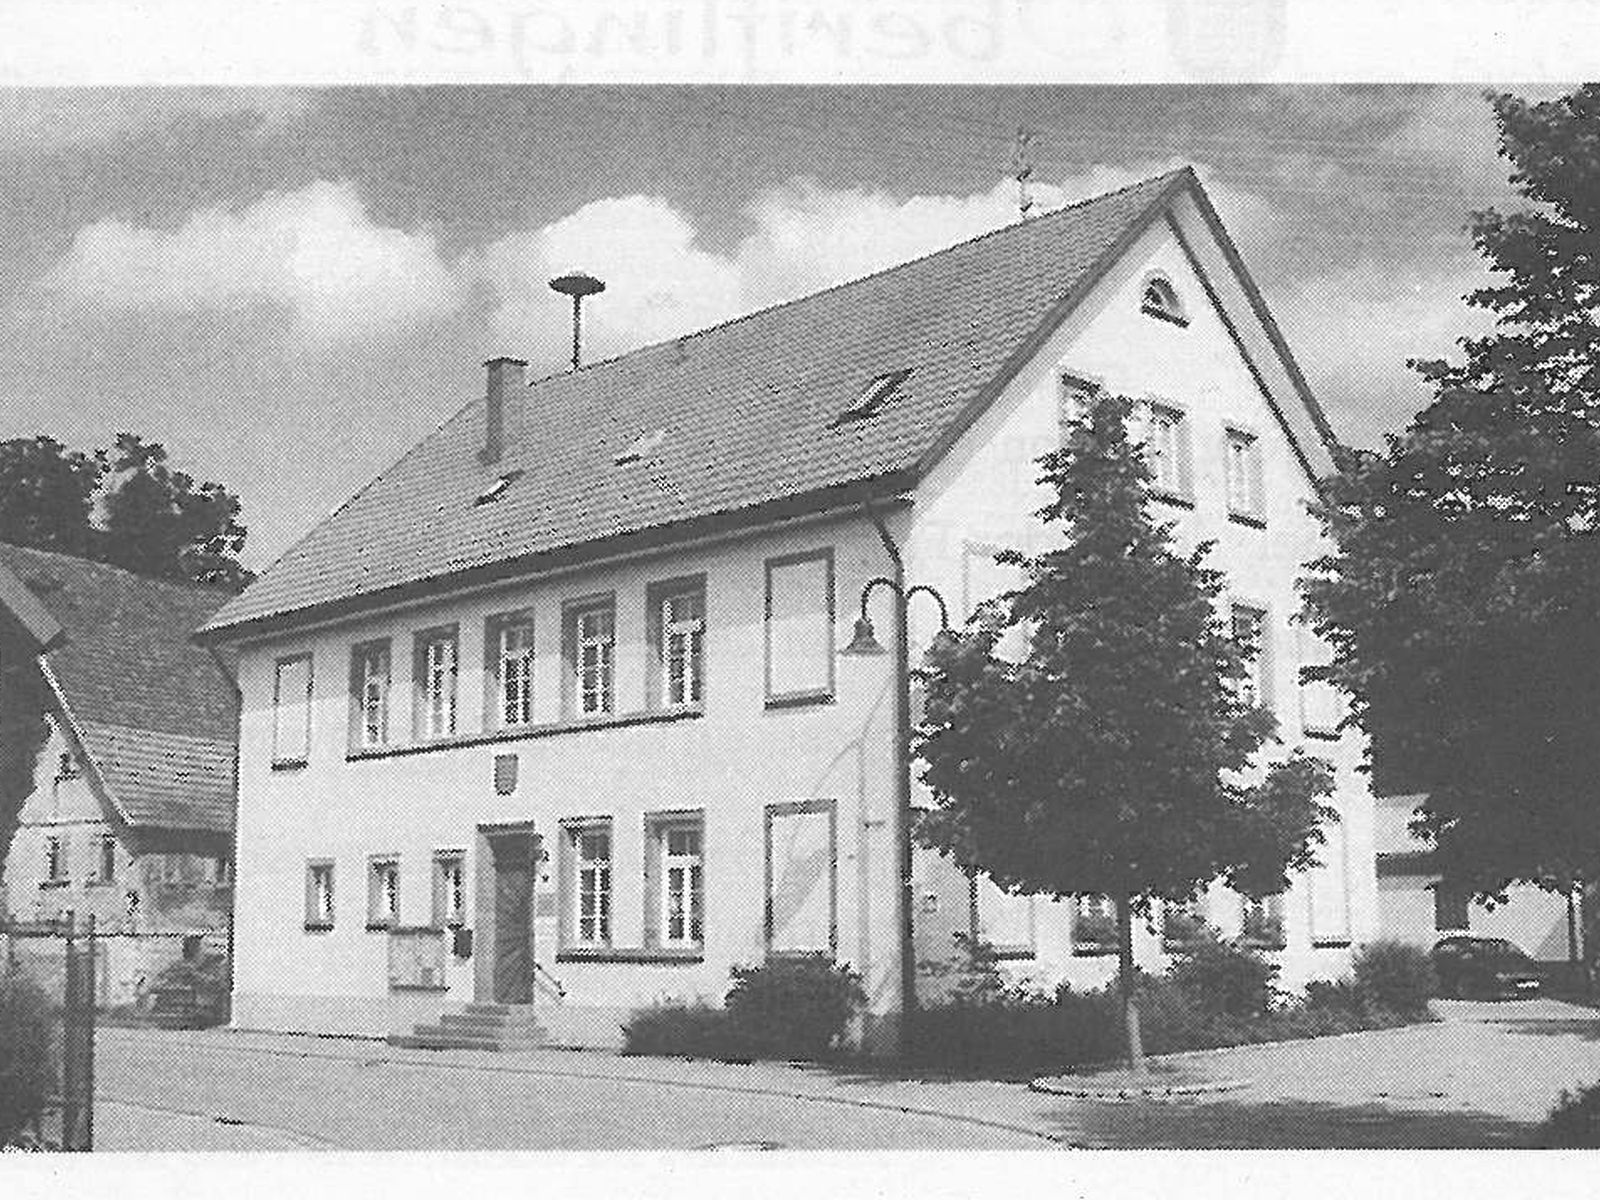  Schopflocher Skizzen Schul- und Rathaus Oberiflingen - Bild wird mit einem Klick vergrößert 